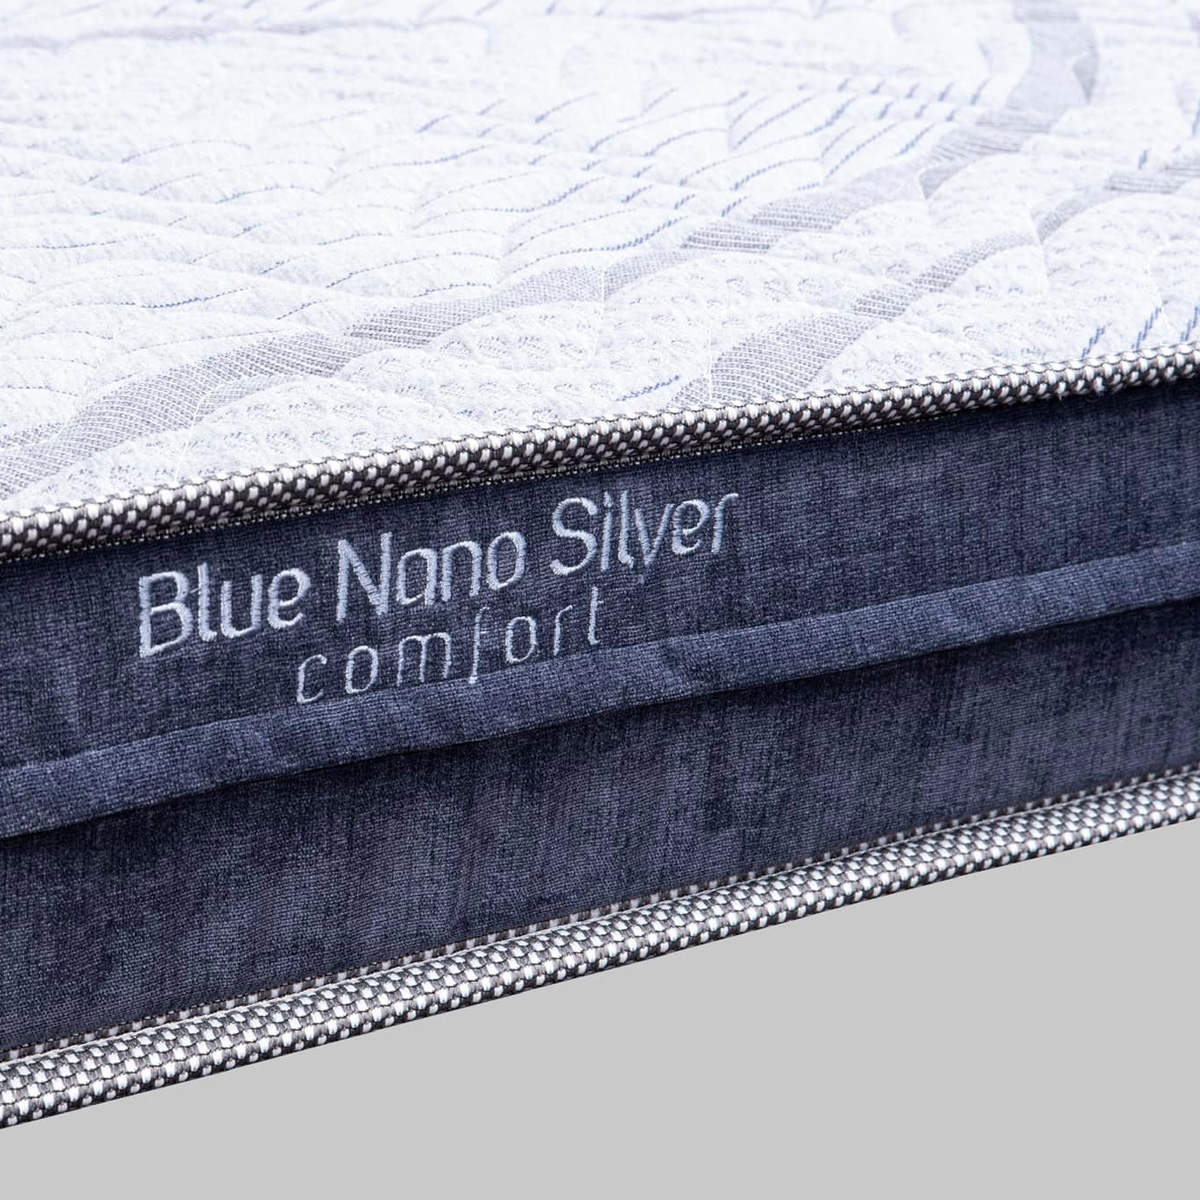 dem bong blue nano silver comfort hanvico 5